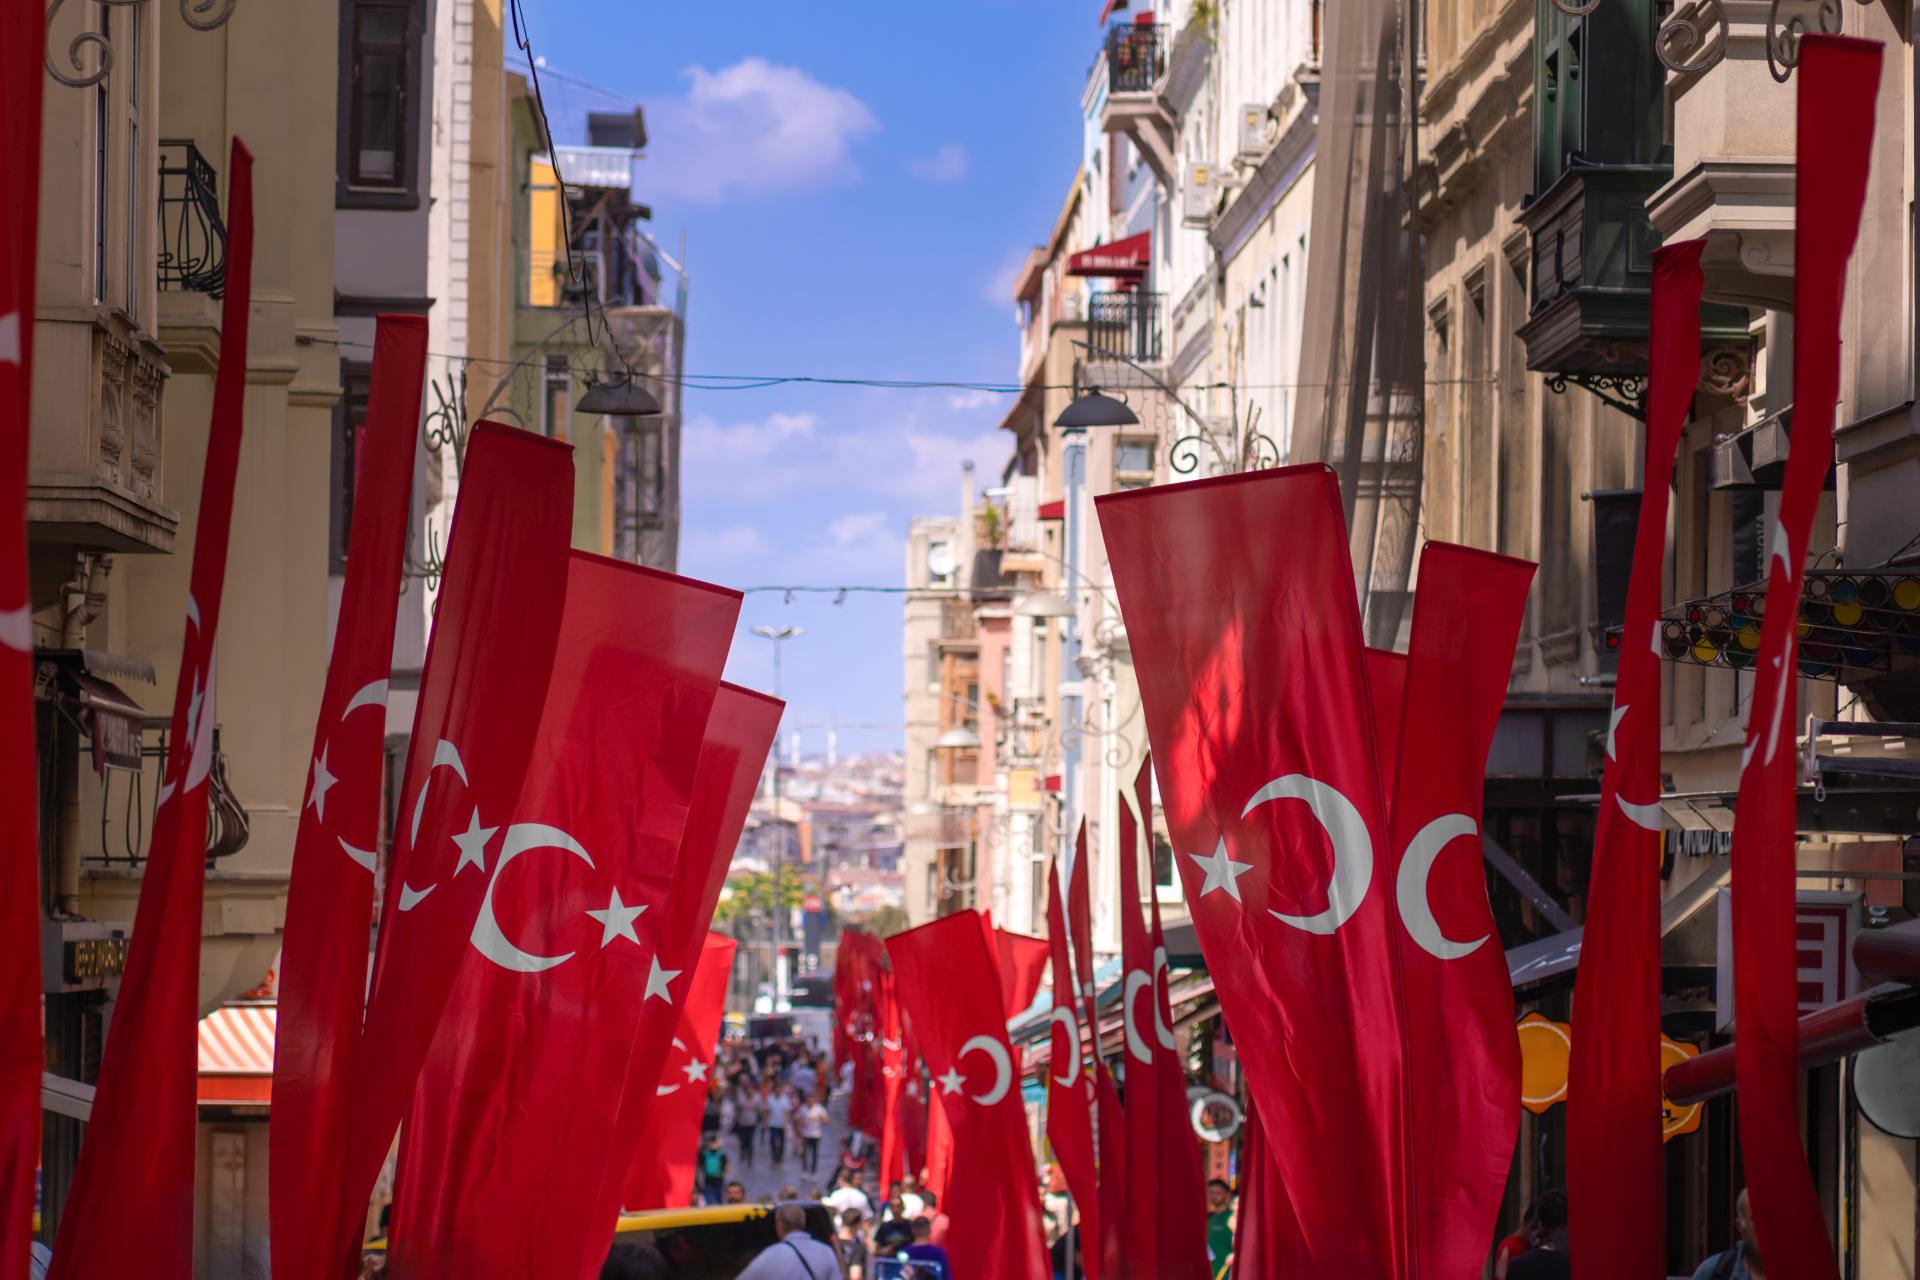 Objem bohatství na osobu se nejvíce zvýšil v Turecku, inflaci navzdory